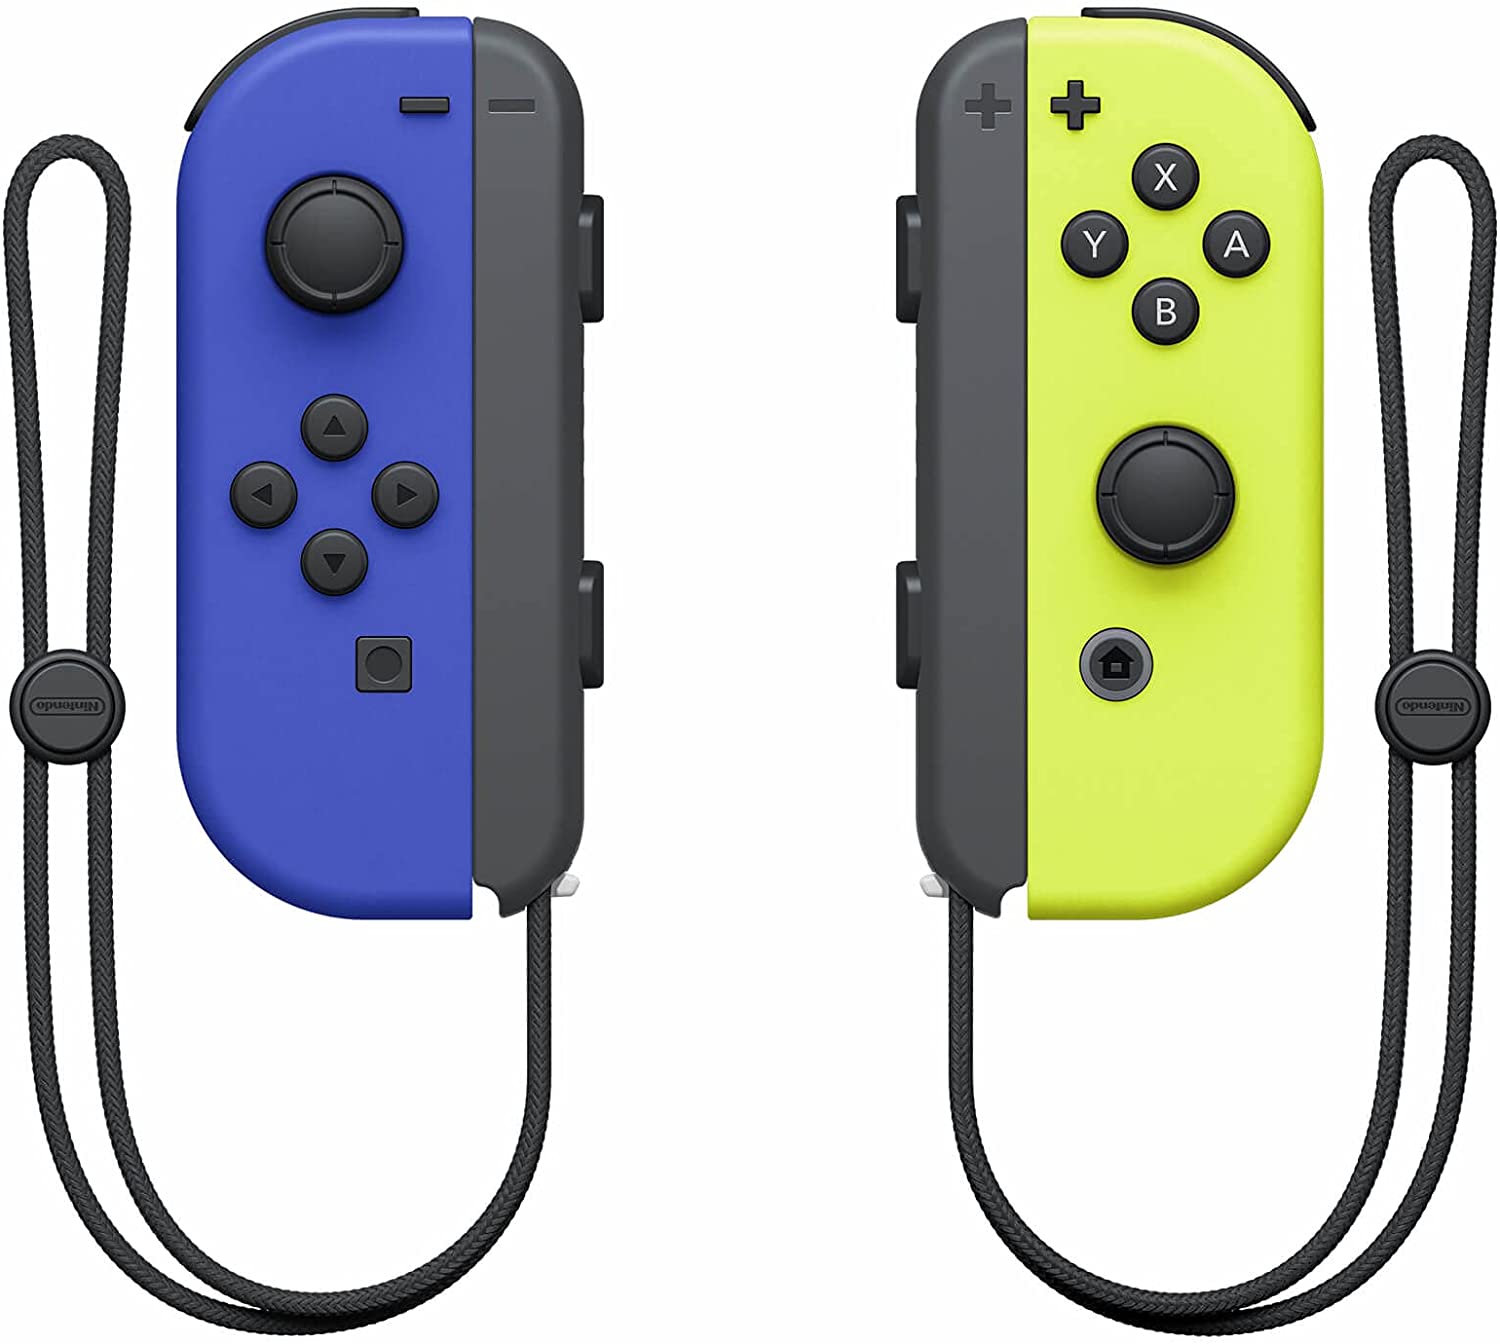 Set de 2 controles inalámbricos Joy-Con colores azul y amarillo (Neon Blue & Neon Yellow)